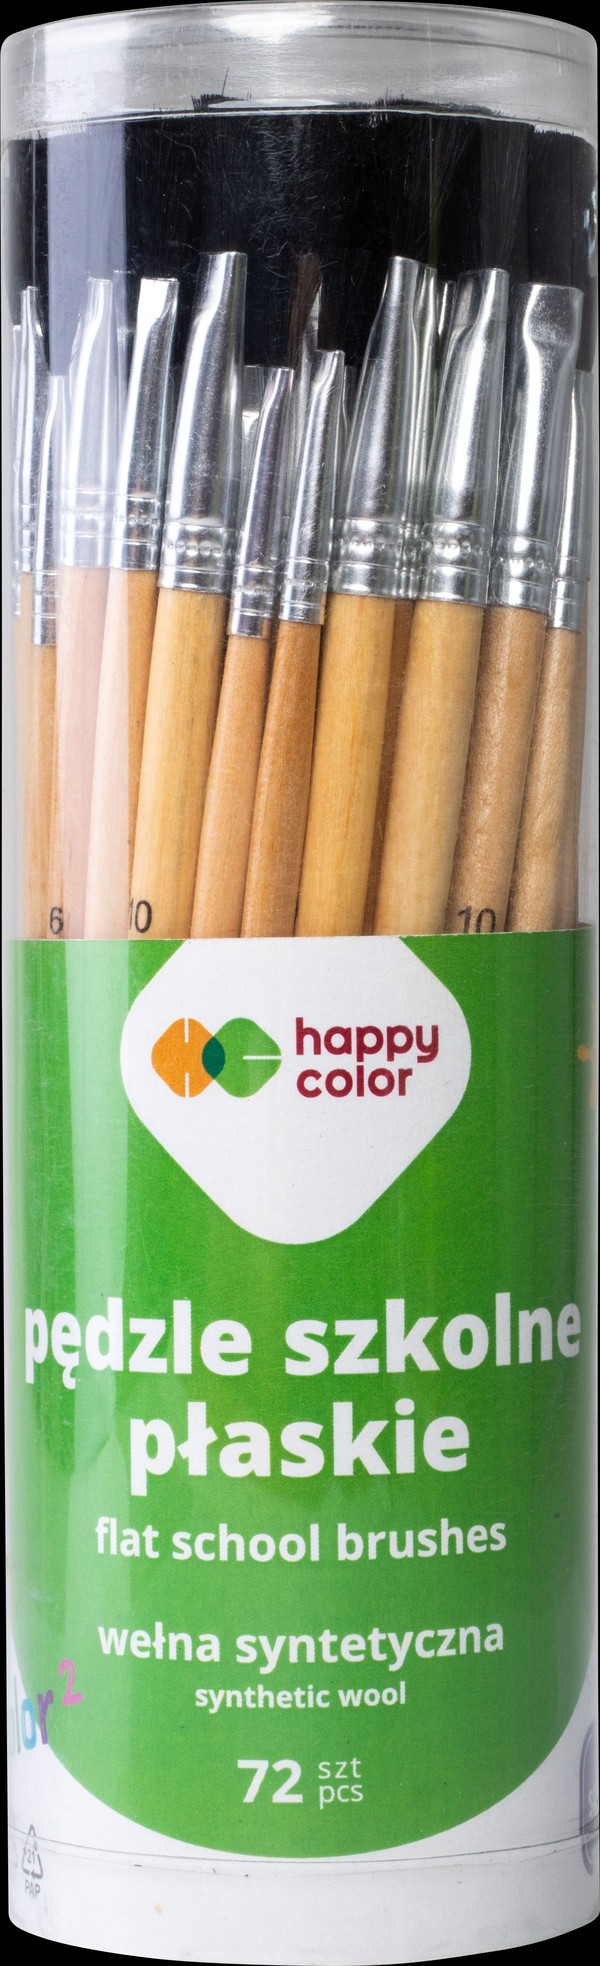 Pędzle szkolne płaskie syntetyczne 2/6/10 happy color mix 72 szt.